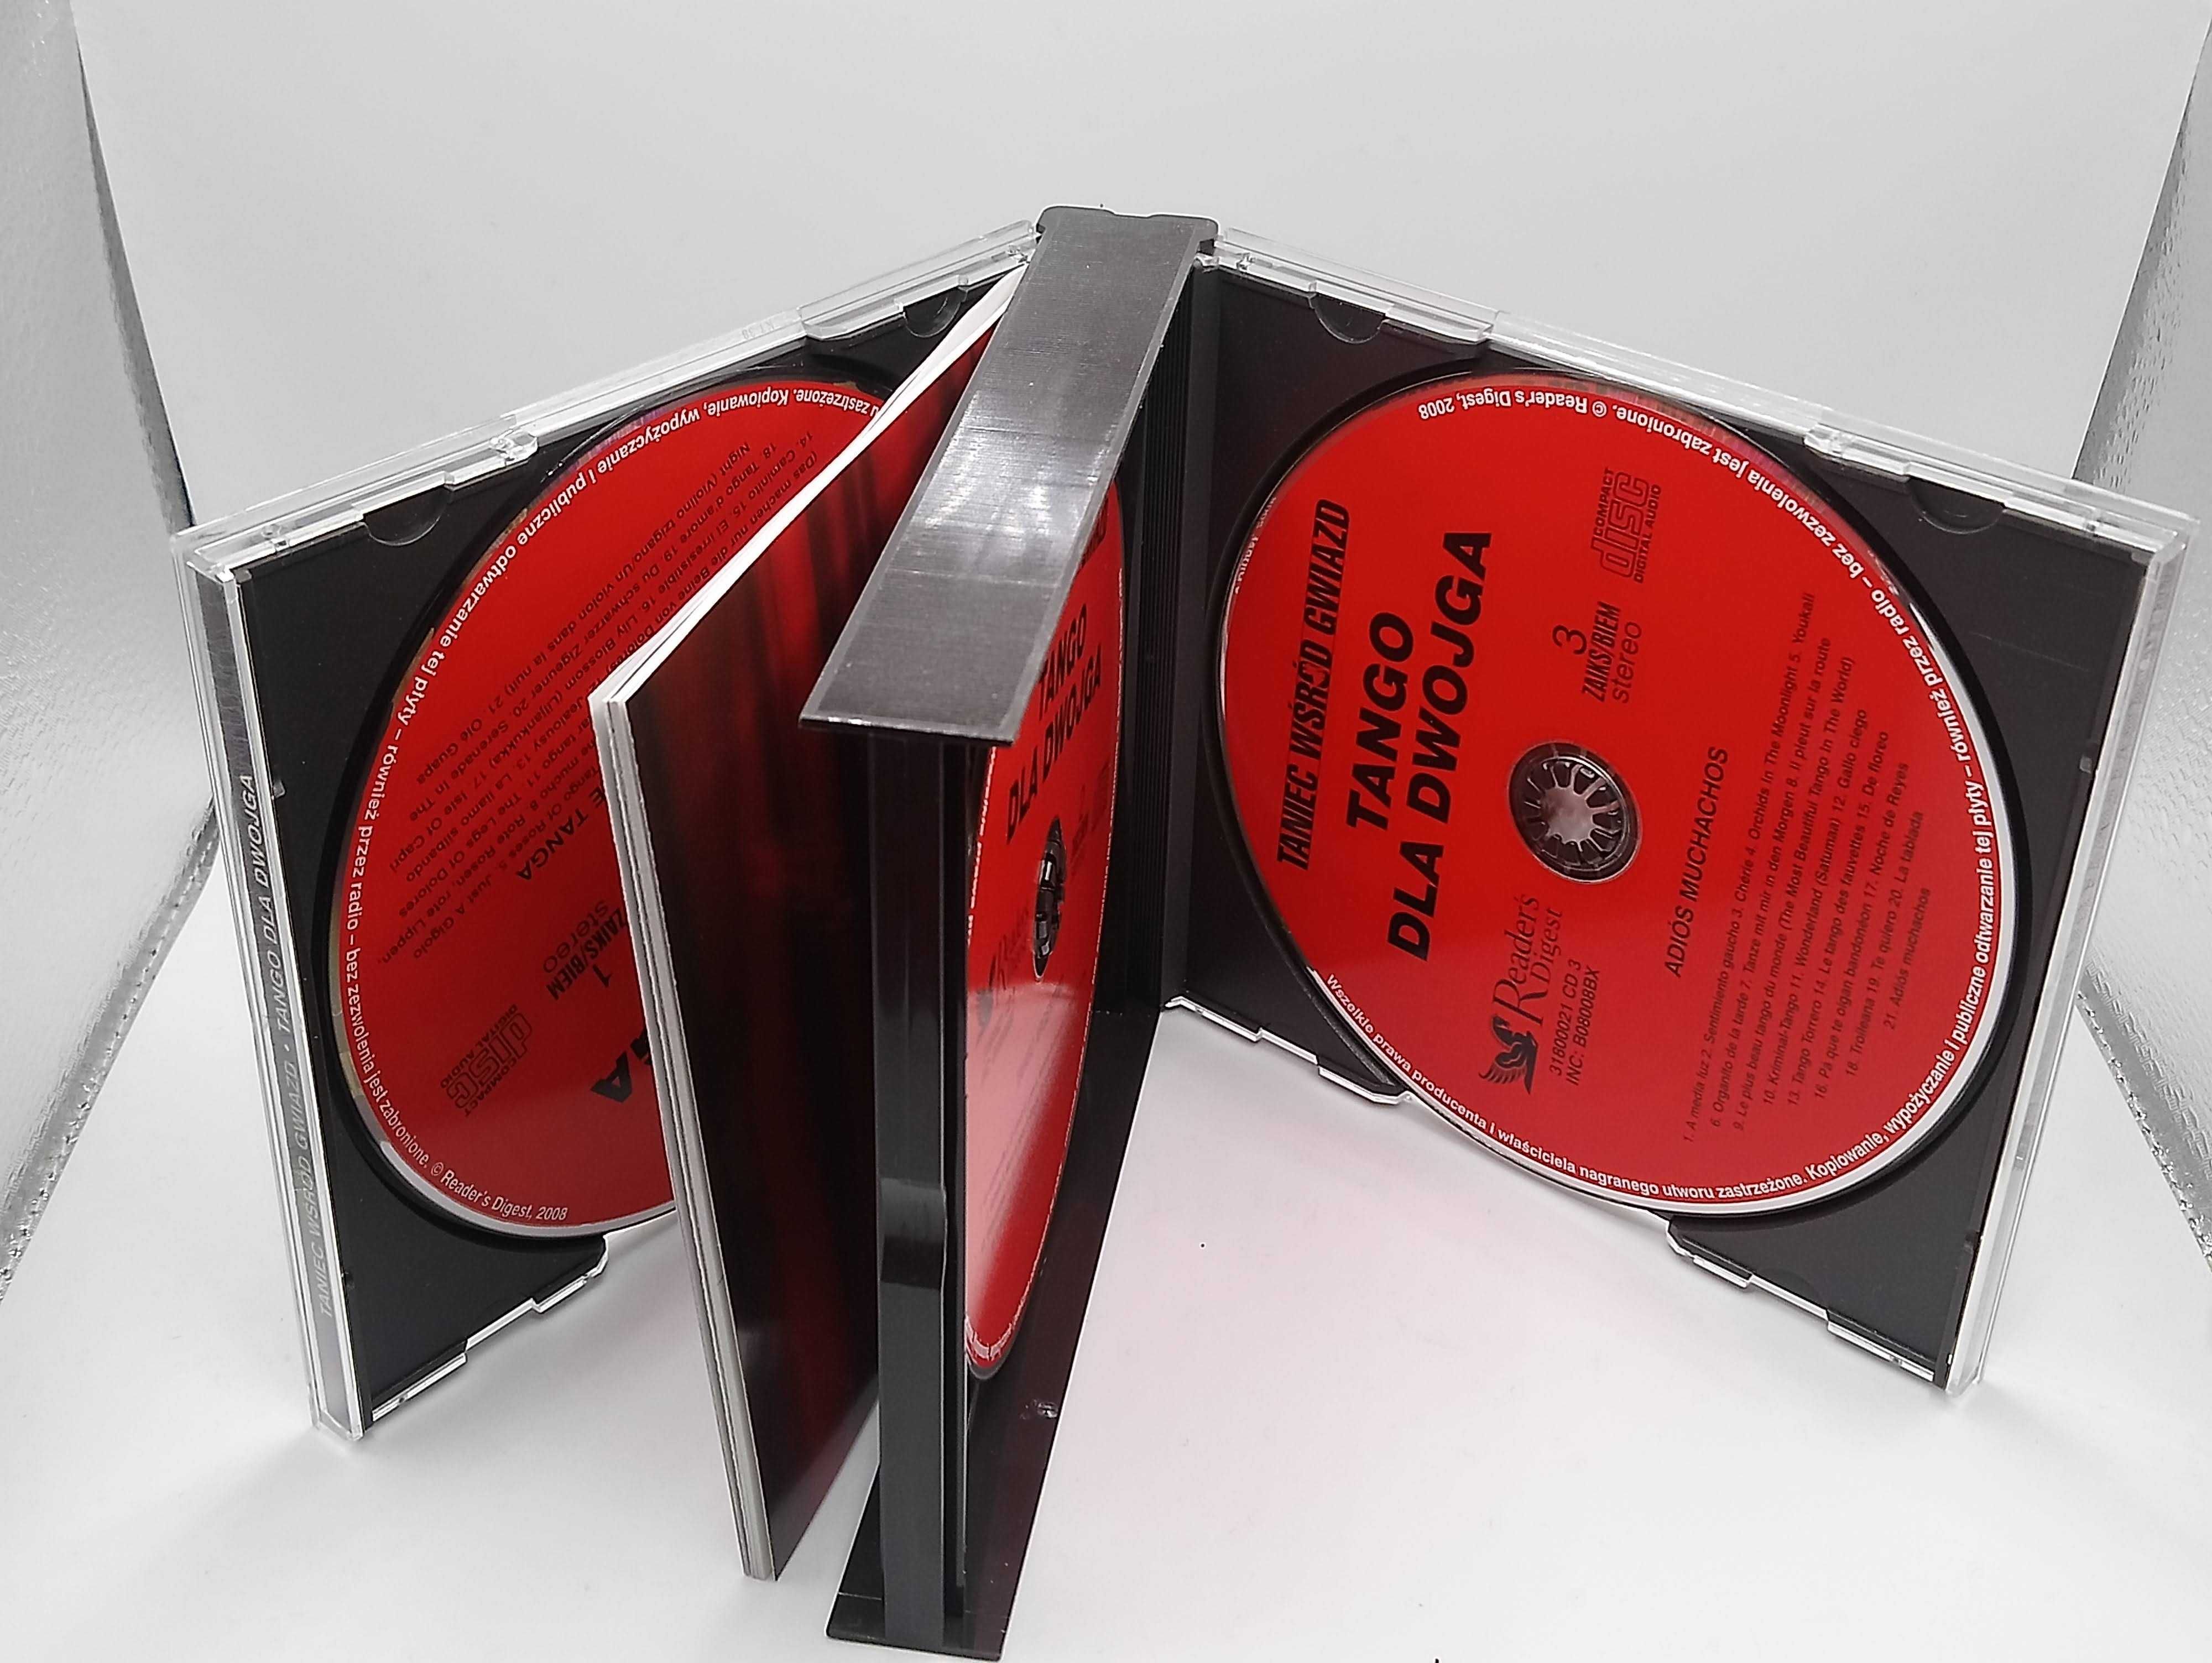 CD płyta audio Tango dla dwojga, taniec wśród gwiazd 3xCD